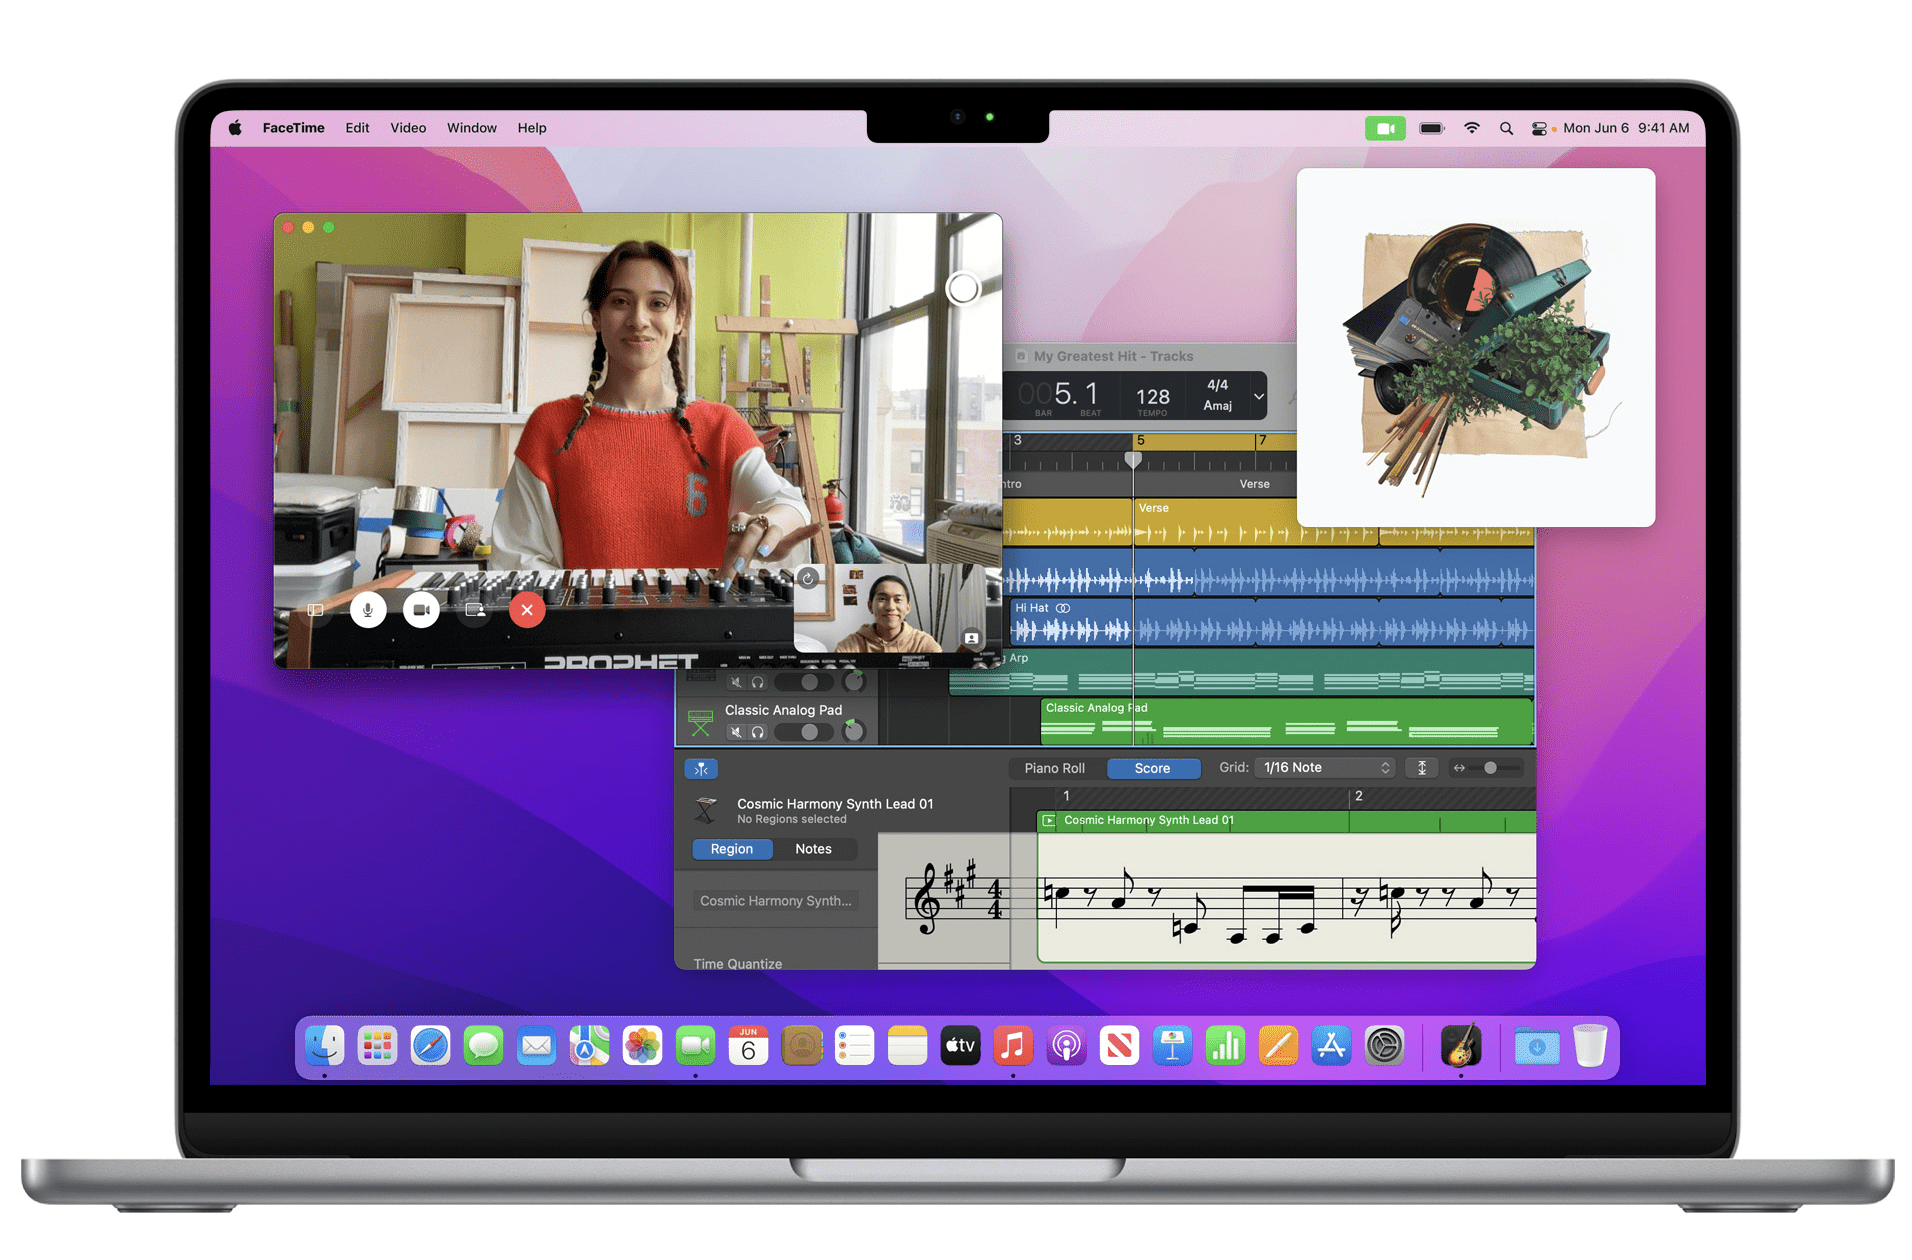 Apple MacBook Air M2 se hod pro hlasov, hudebn i video aplikace, kdy je vybaven 3 mikrofony studiov kvality a 1080p webovou kamerou FaceTime.